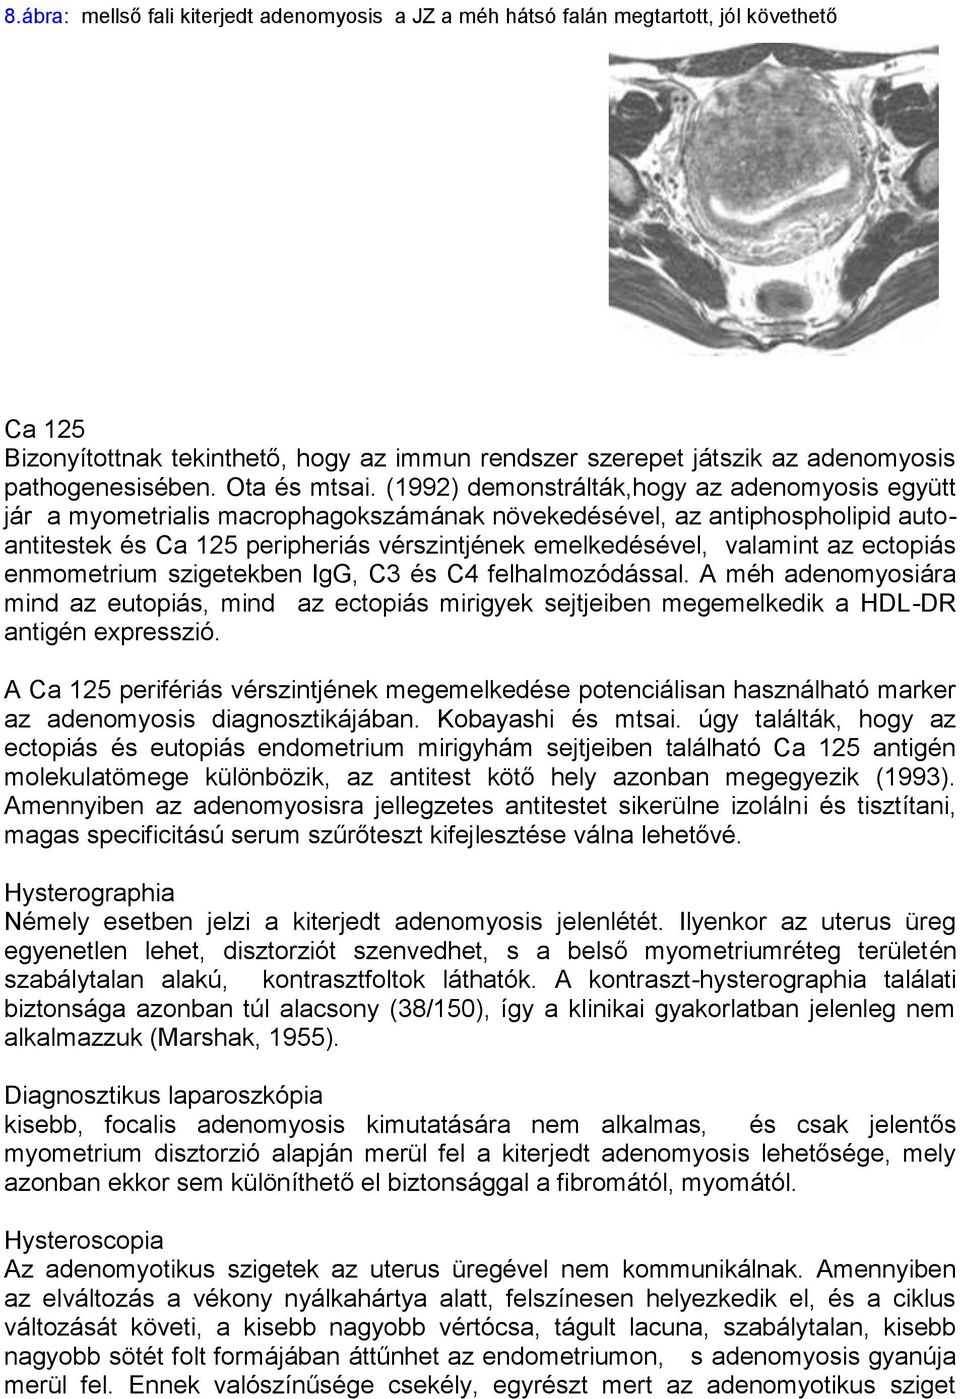 (1992) demonstrálták,hogy az adenomyosis együtt jár a myometrialis macrophagokszámának növekedésével, az antiphospholipid autoantitestek és Ca 125 peripheriás vérszintjének emelkedésével, valamint az